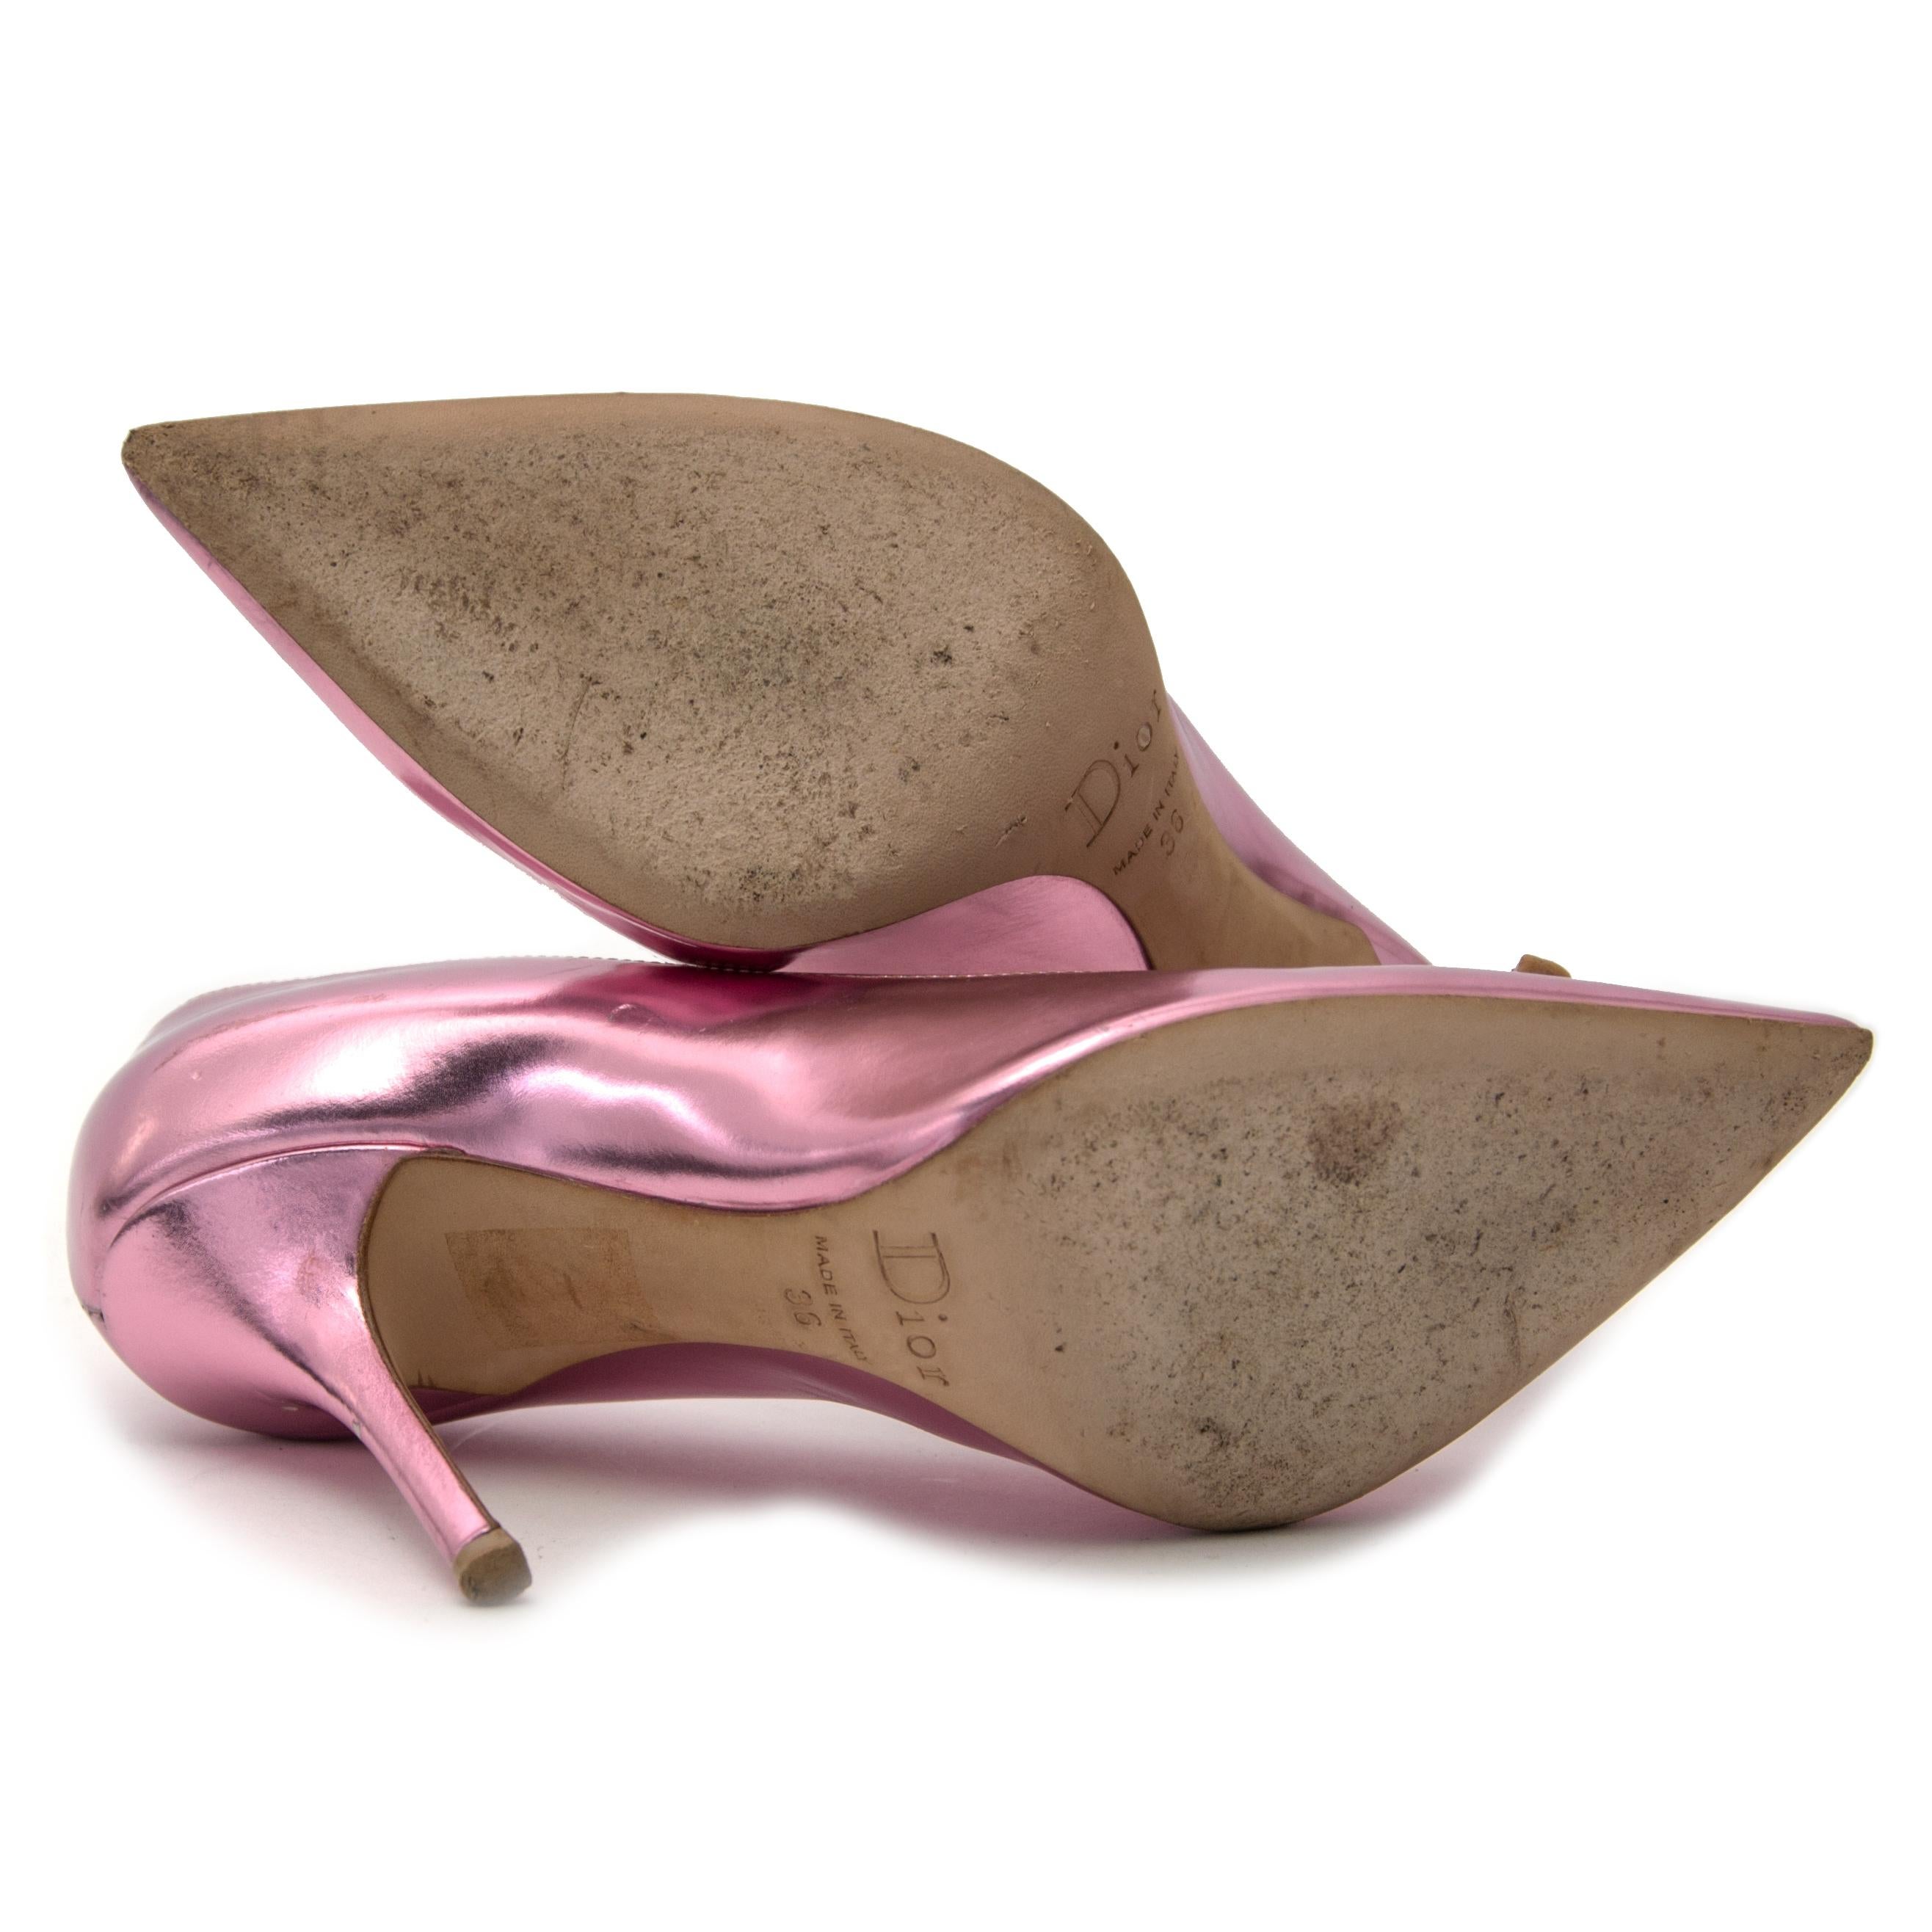 metallic pink heels